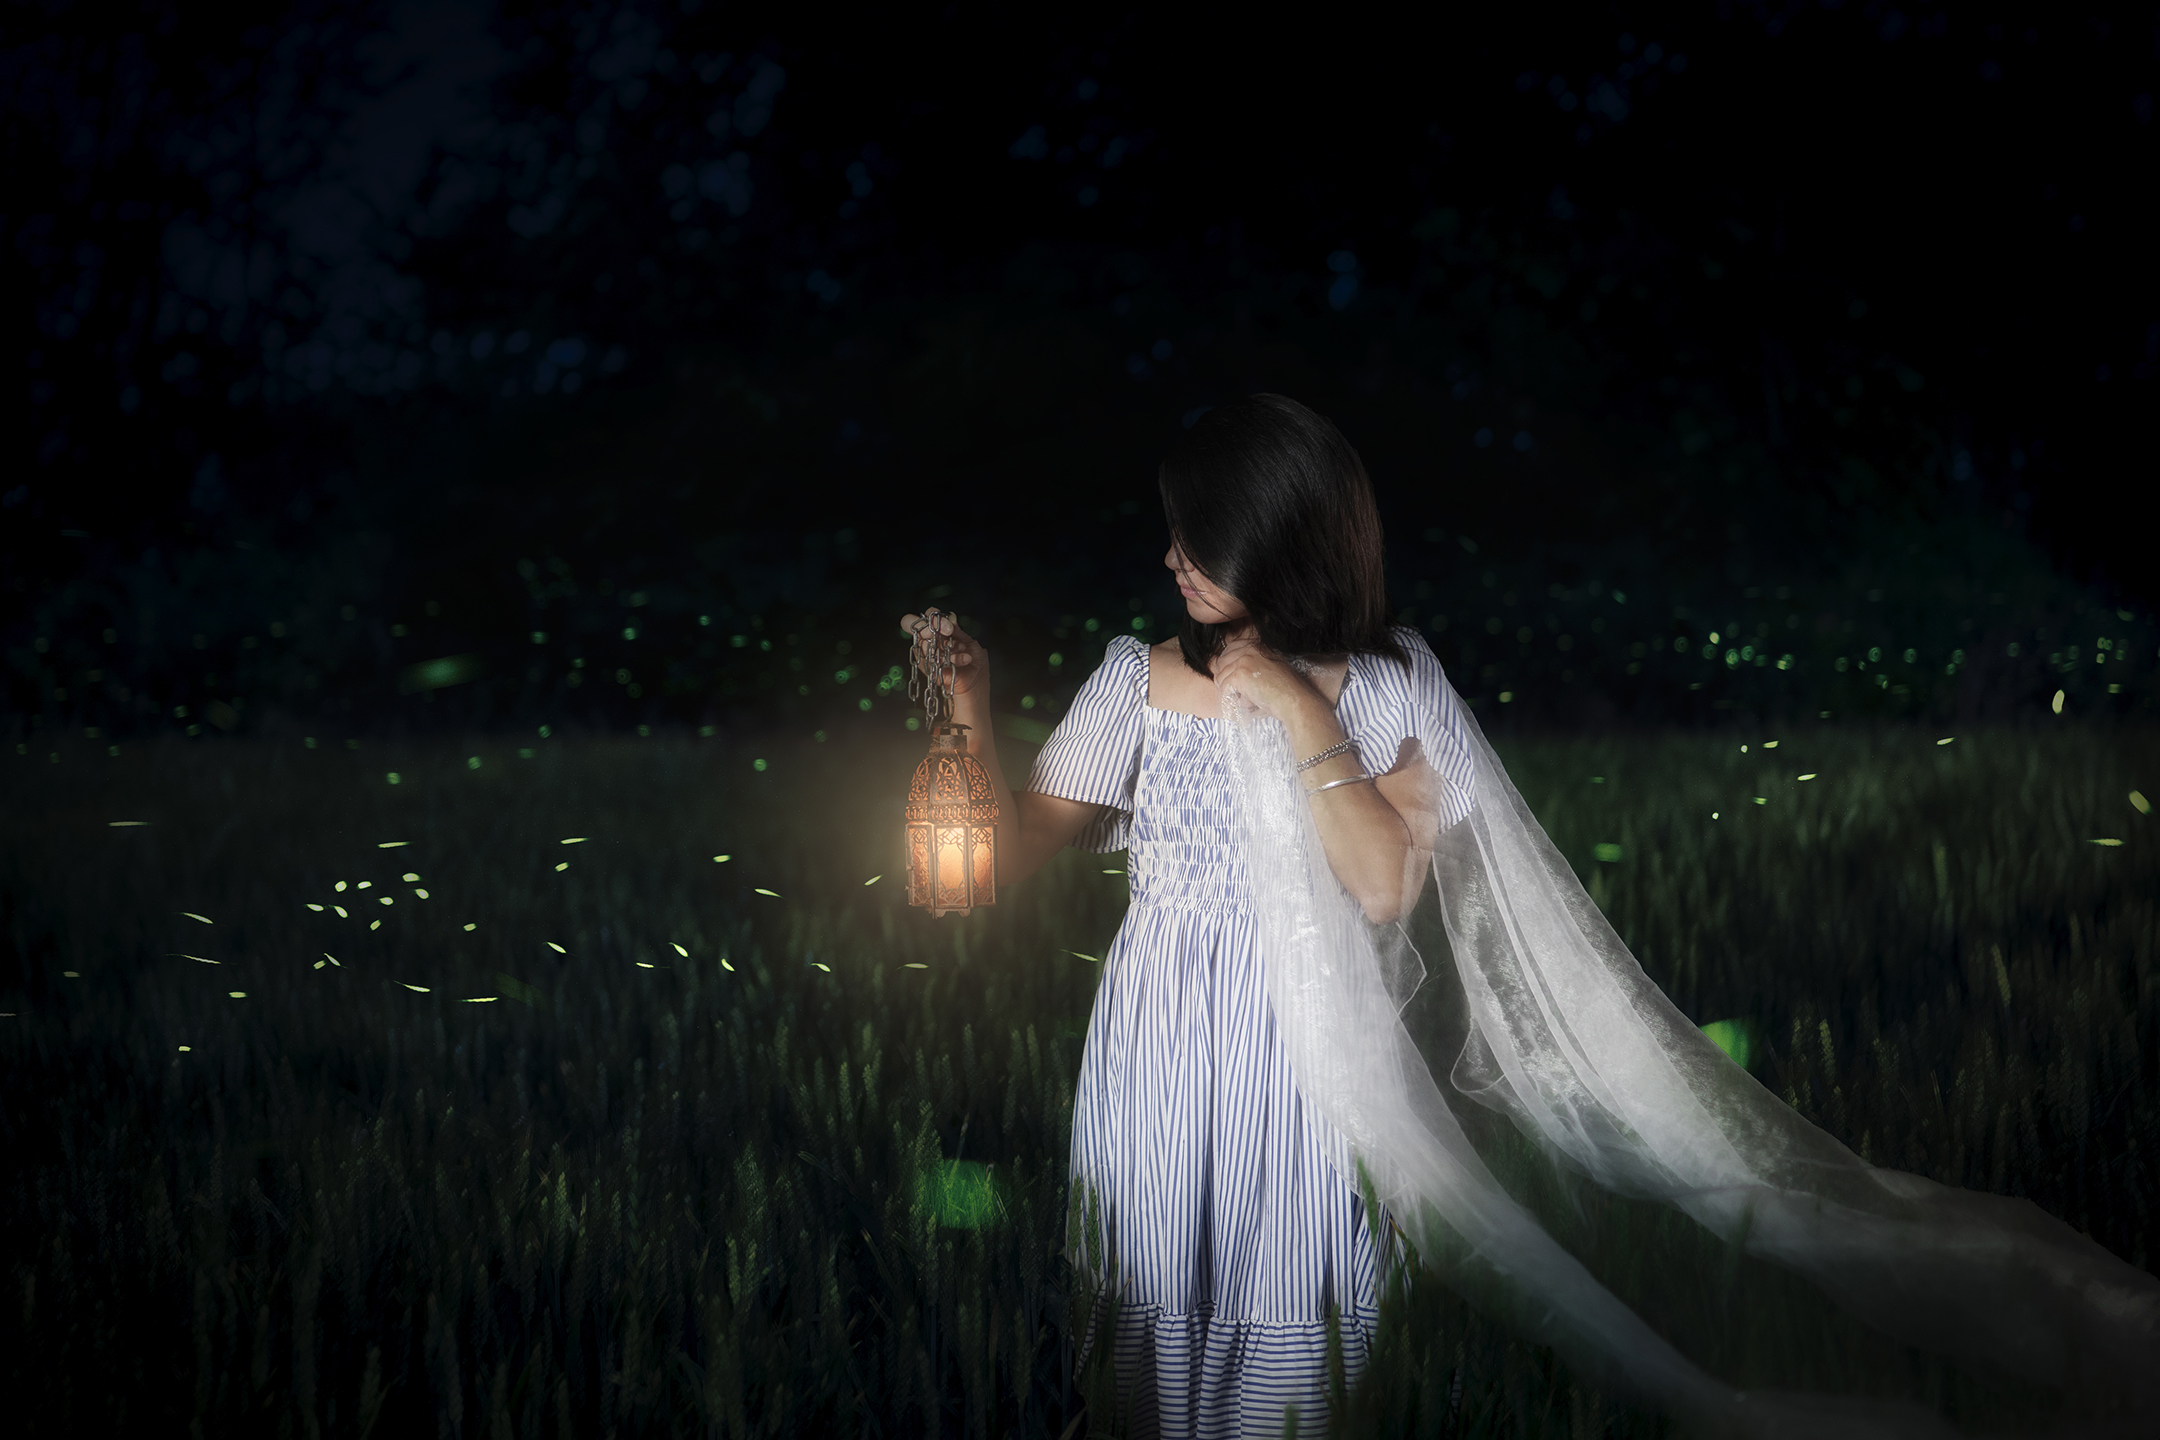 Portrait with fireflies...